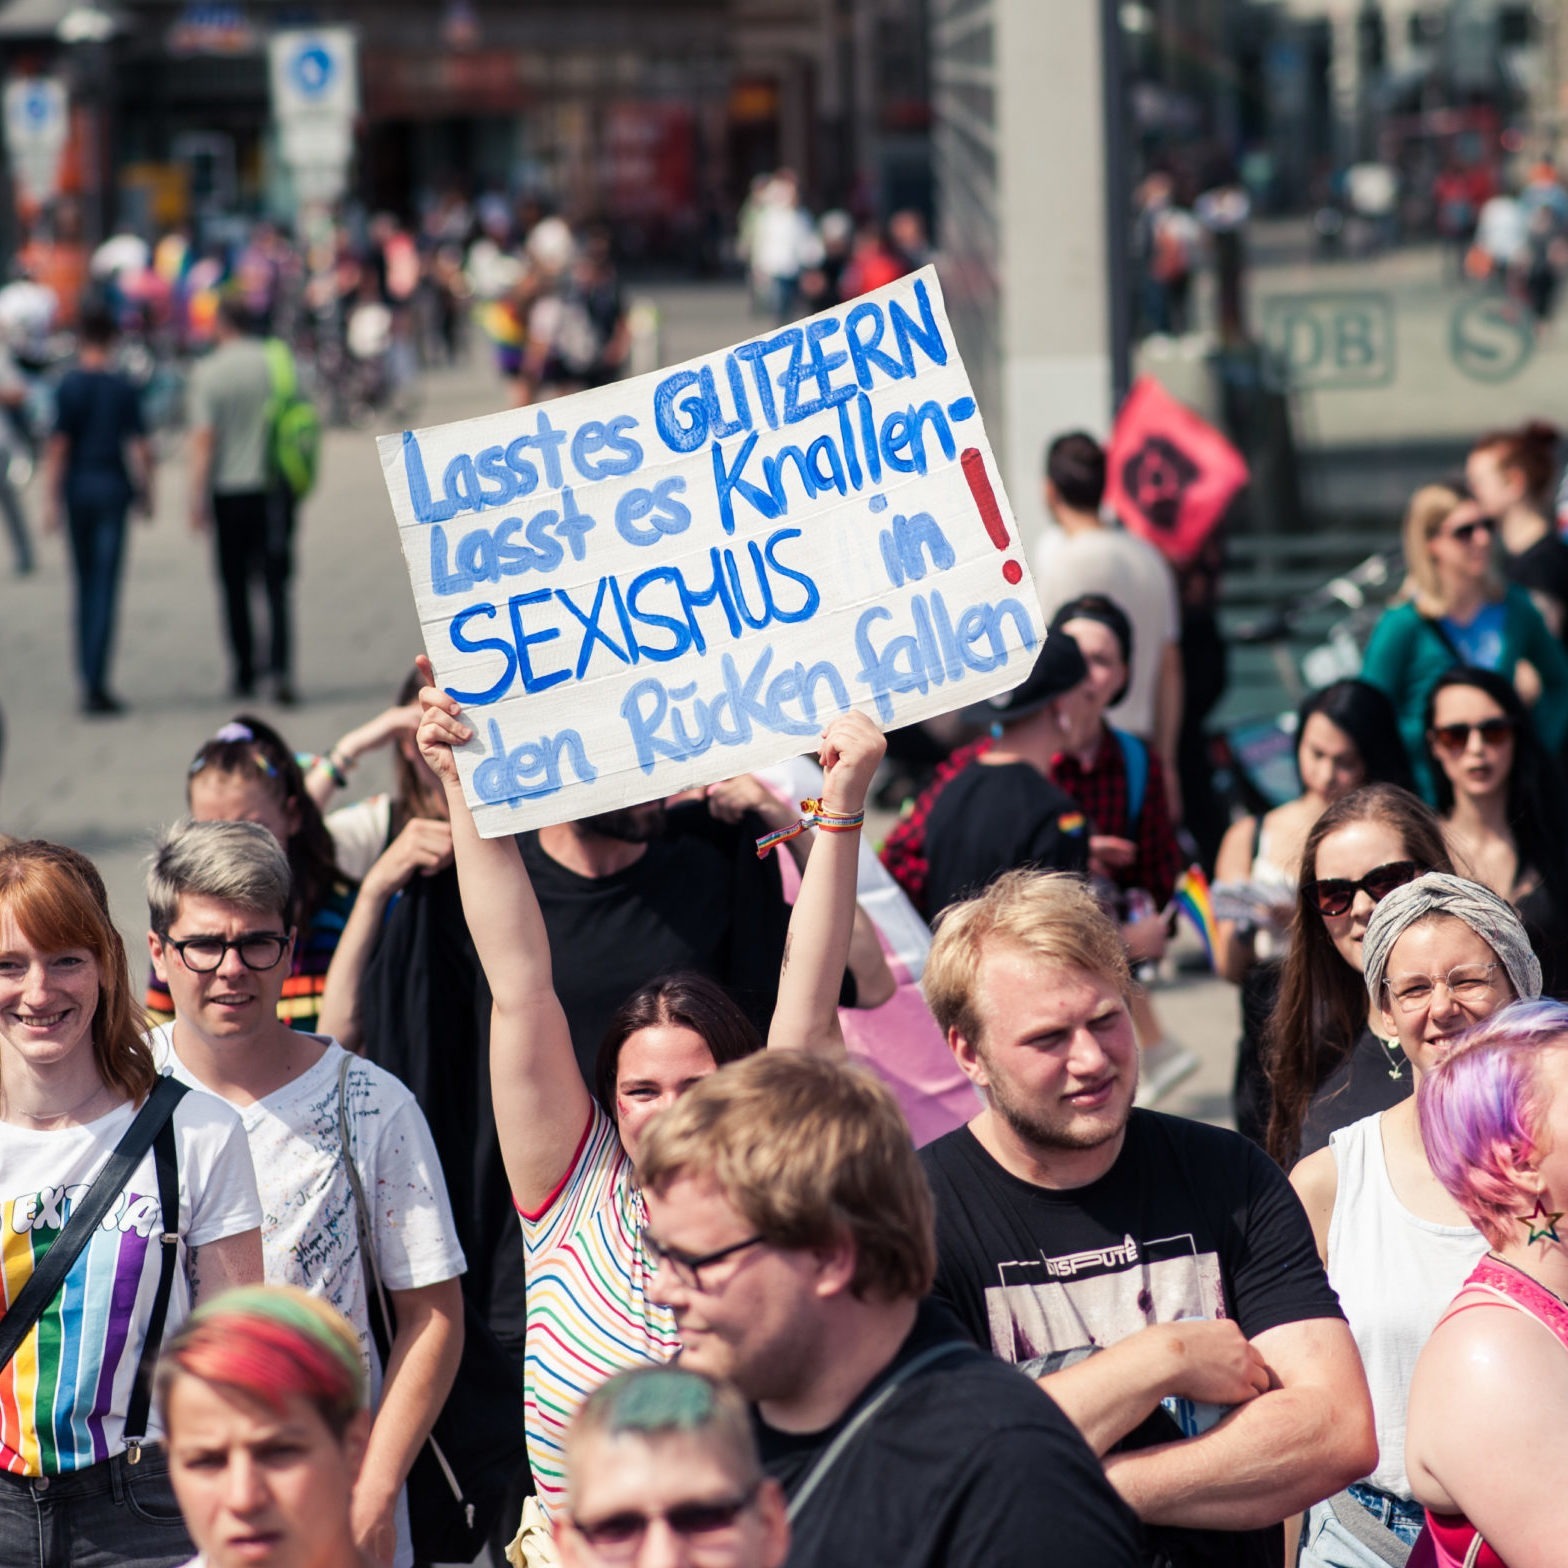 Demo-Schild mit der Aufschrift "Lasst es glitzern lasst es knallen - Sexismus in den Rücken fallen!"